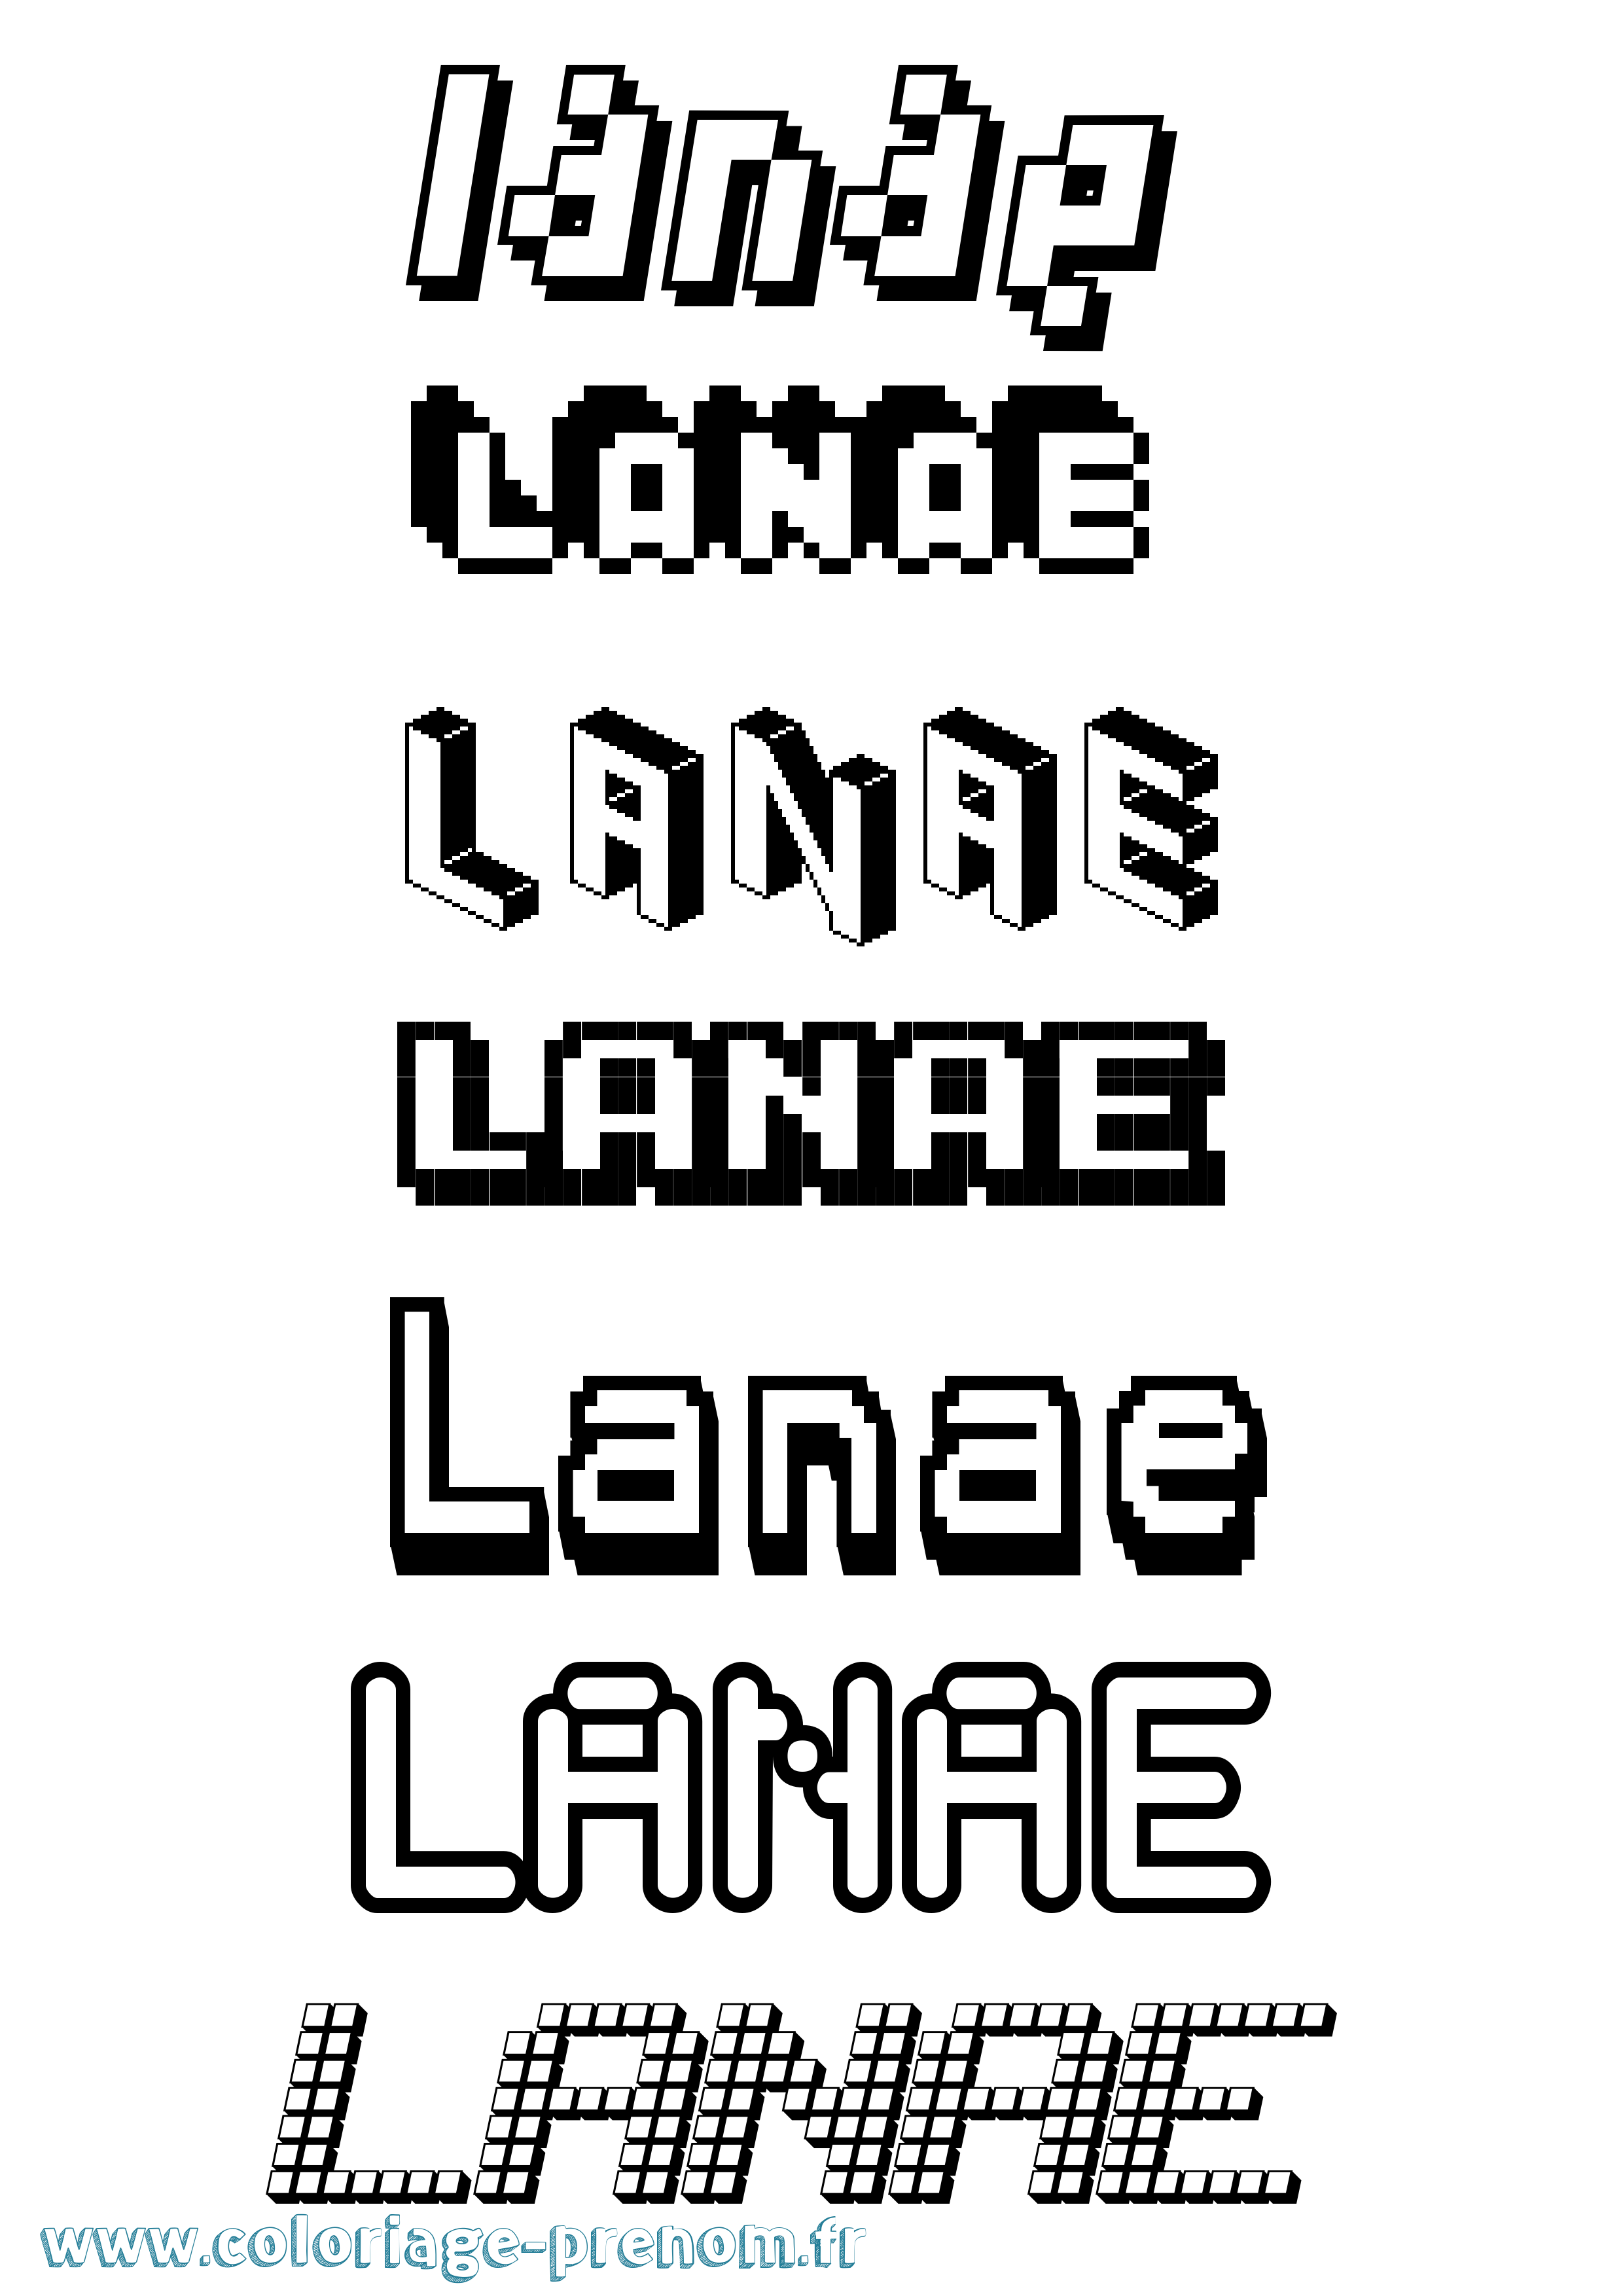 Coloriage prénom Lanae Pixel